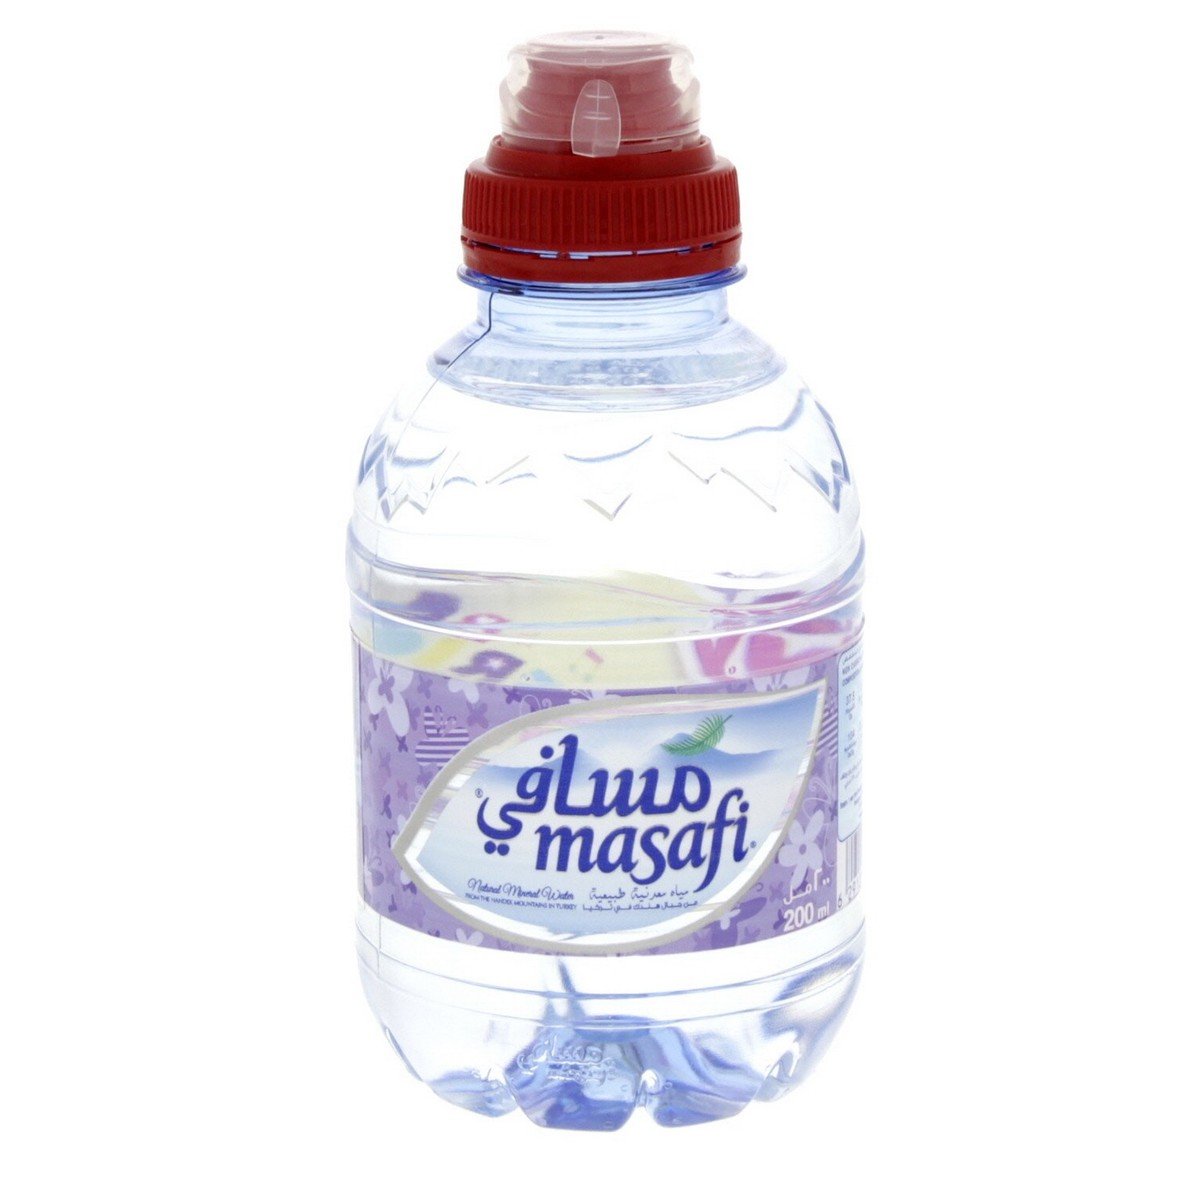 Masafi Little Pony Sports Cap Bottled Drinking Water 12 x 200 ml